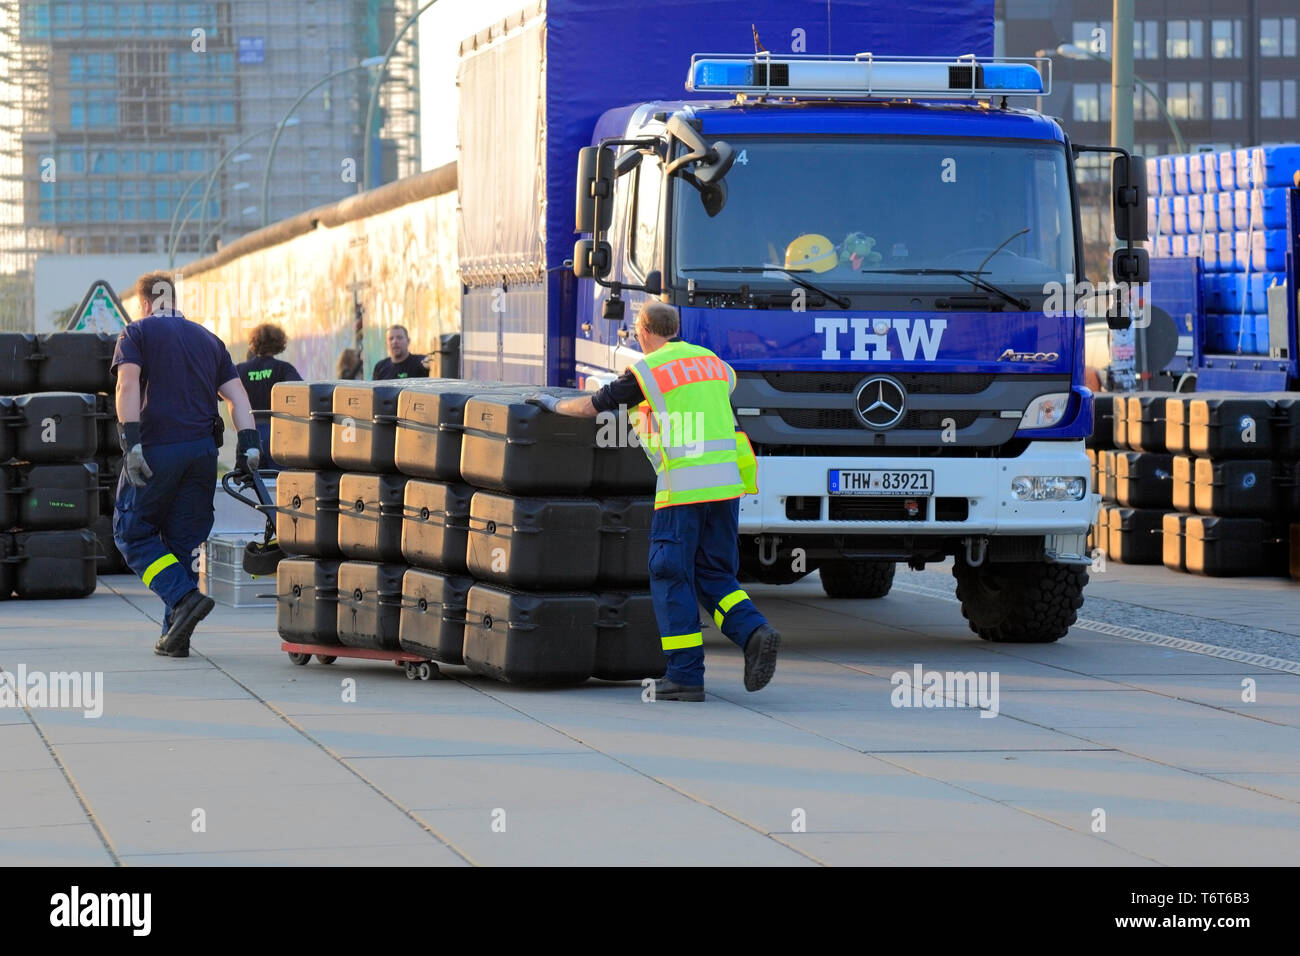 Le THW, Technisches Hilfswerk, organisation de protection civile allemande, des camions au cours de l'exercice de contrôle des catastrophes. Banque D'Images